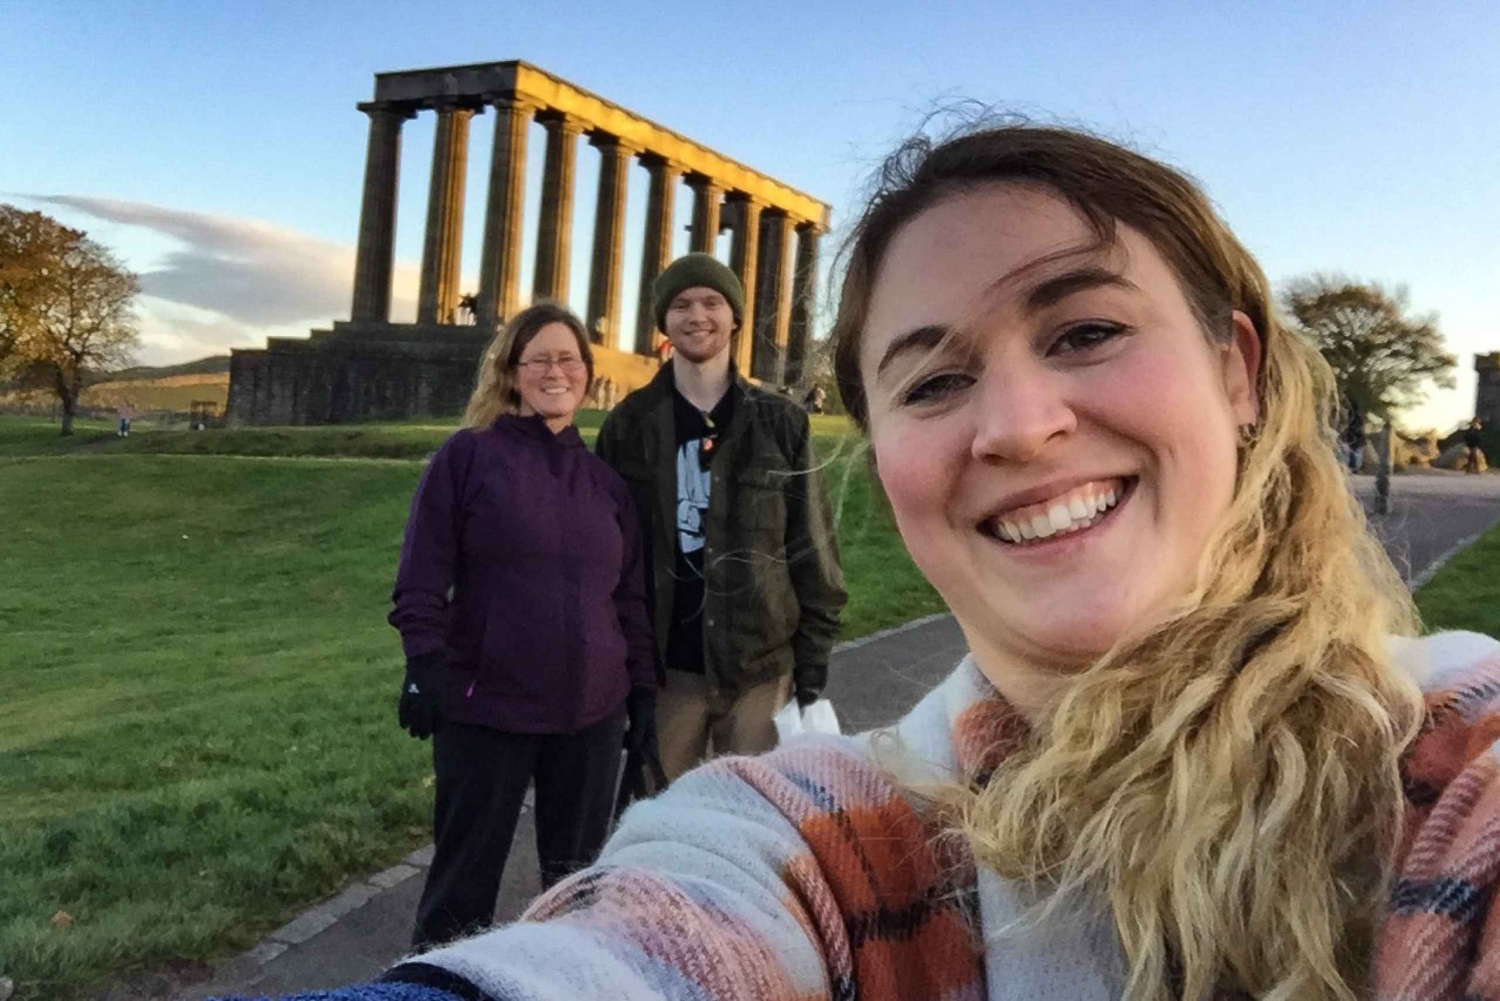 Edinburgh: Barnevennlig tur med en lokal venn